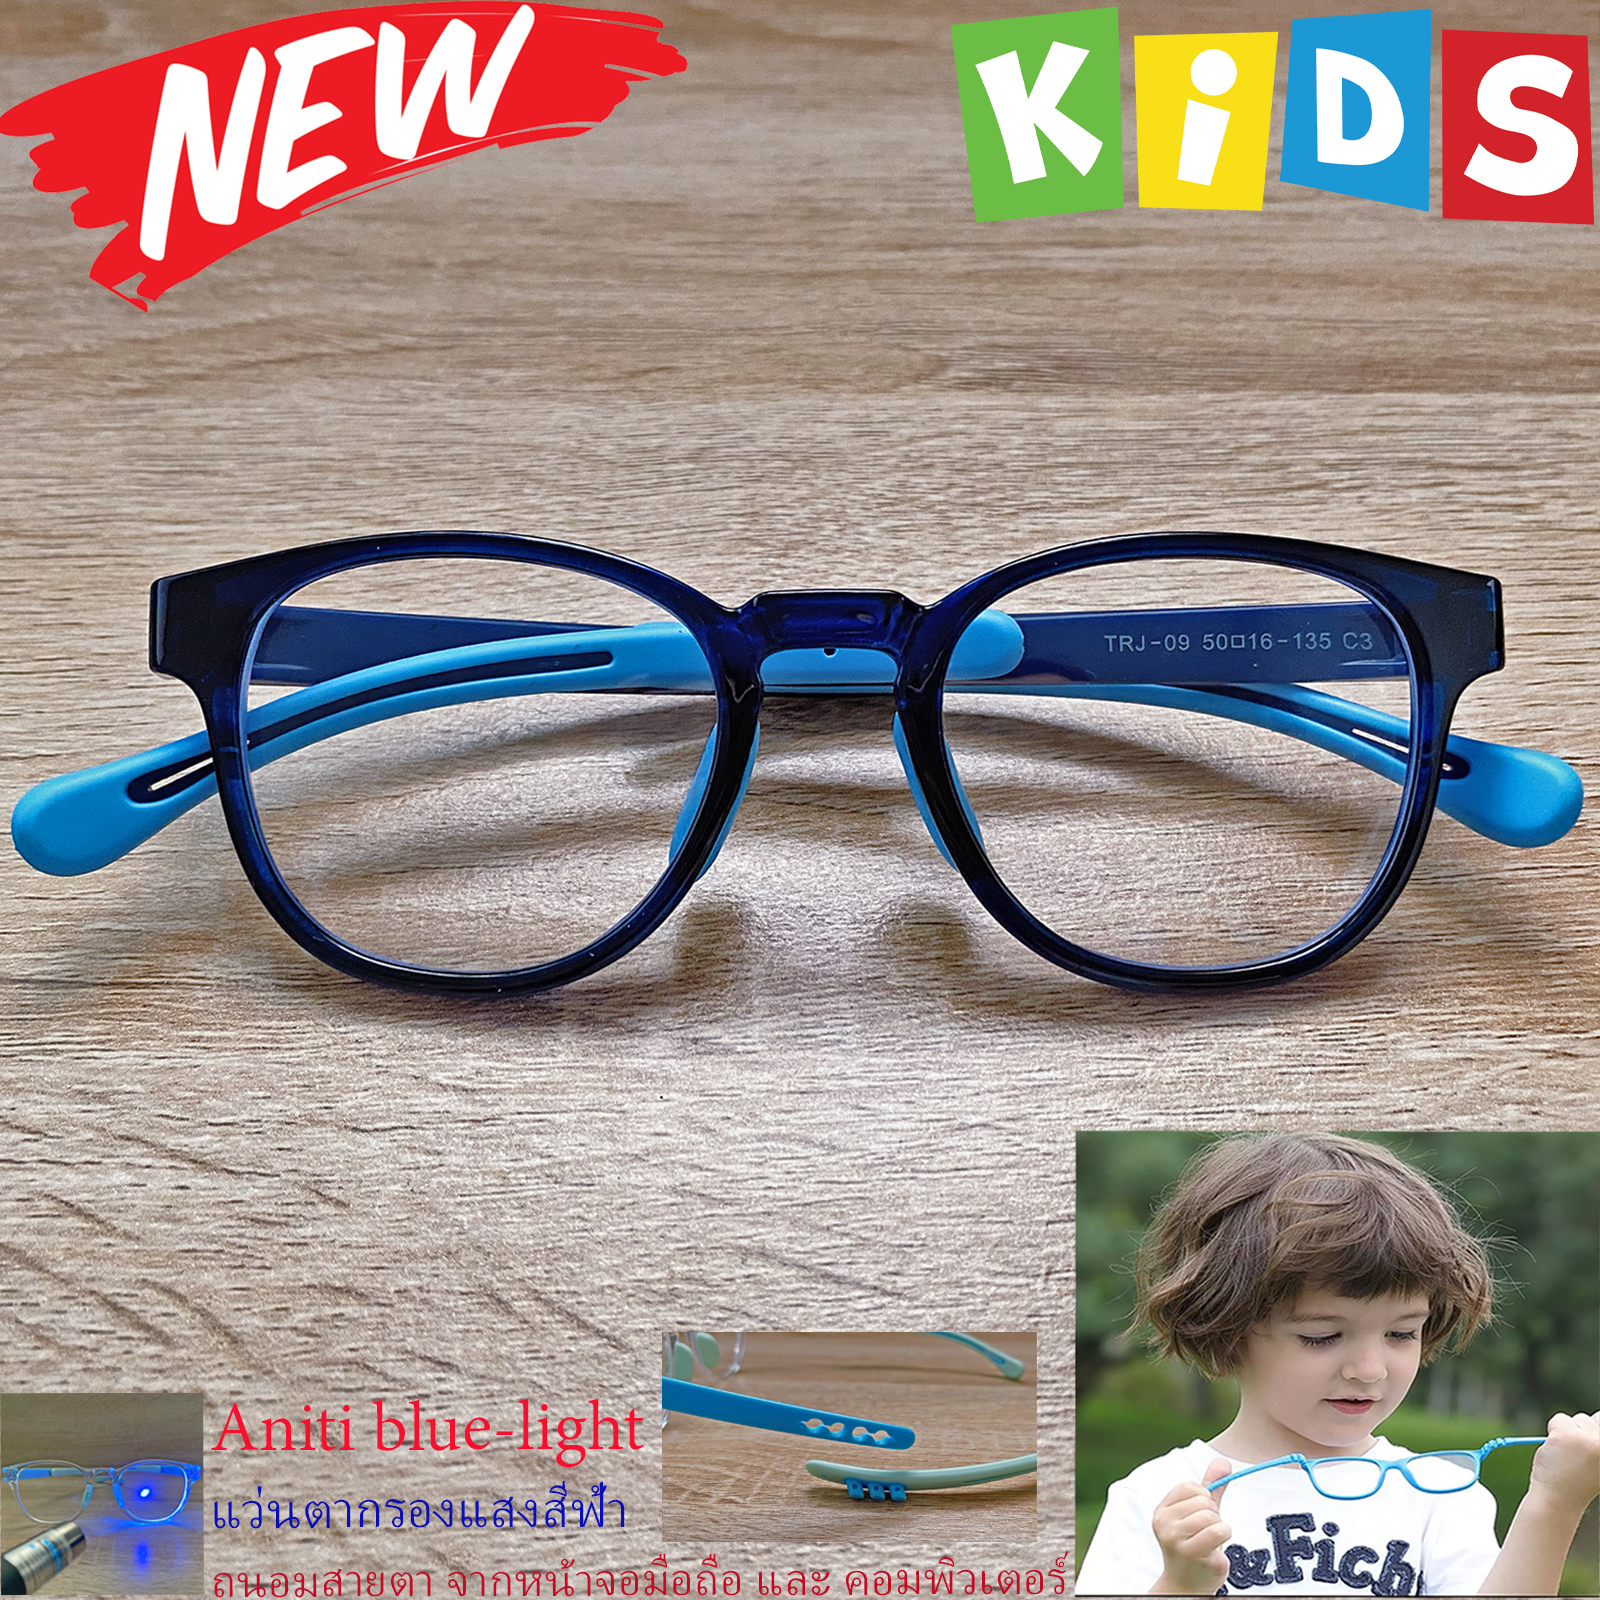 กรอบแว่นตาเด็ก กรองแสง สีฟ้า blue block แว่นเด็ก บลูบล็อค รุ่น 09 สีน้ำเงิน ขาข้อต่อยืดหยุ่น ขาปรับระดับได้ วัสดุTR90 เหมาะสำหรับเลนส์สายตา